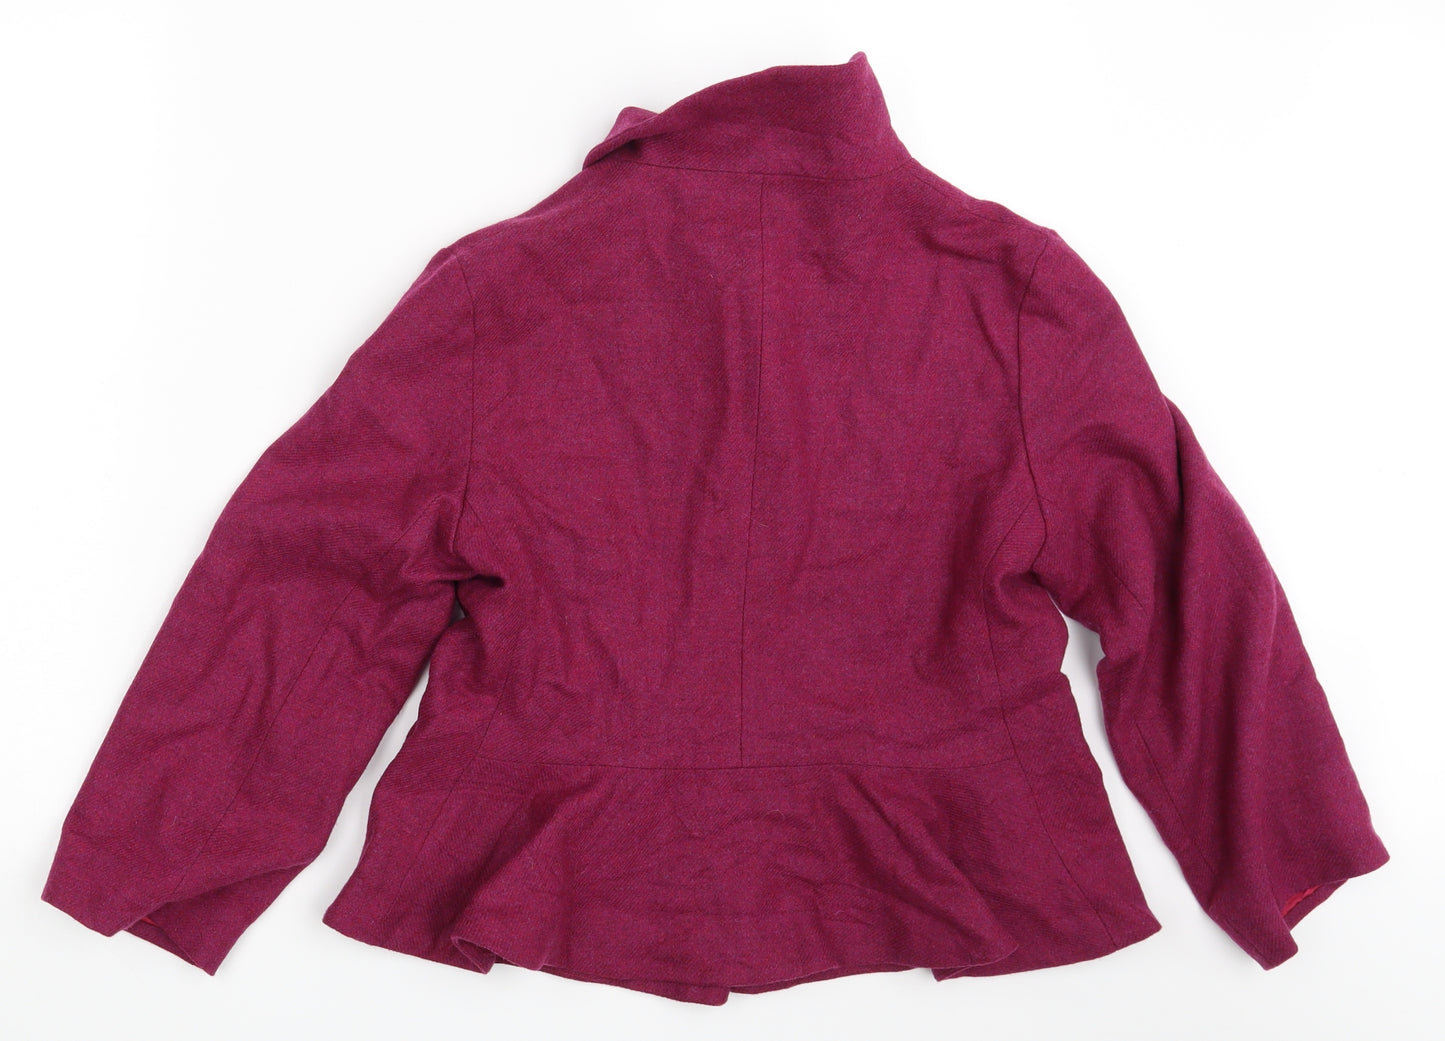 Patra Womens Purple   Jacket Blazer Size 10